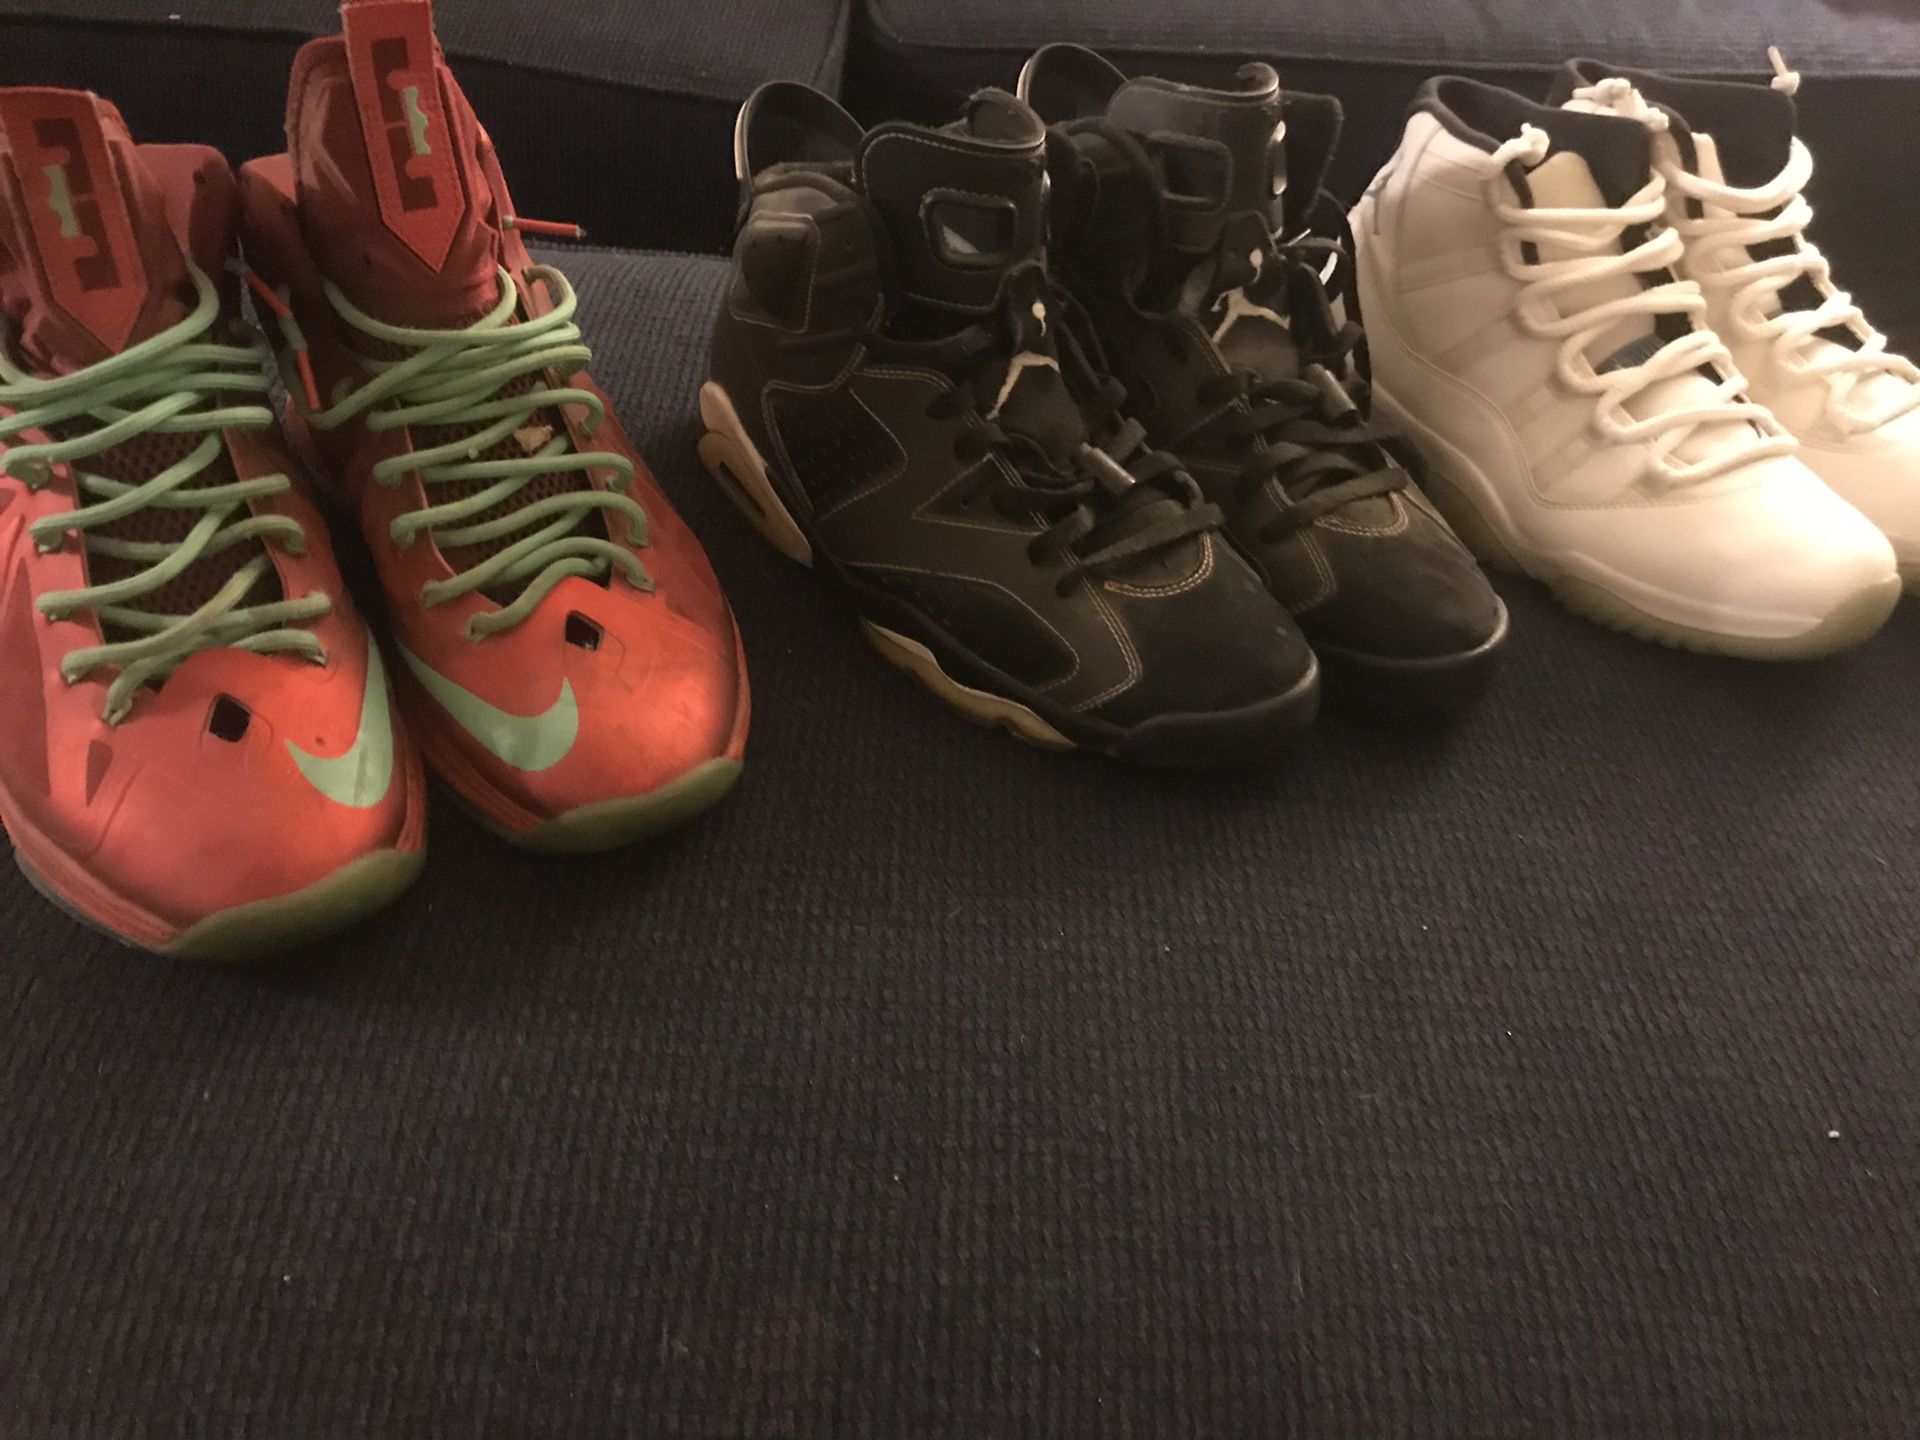 Jordan and Nike shoes